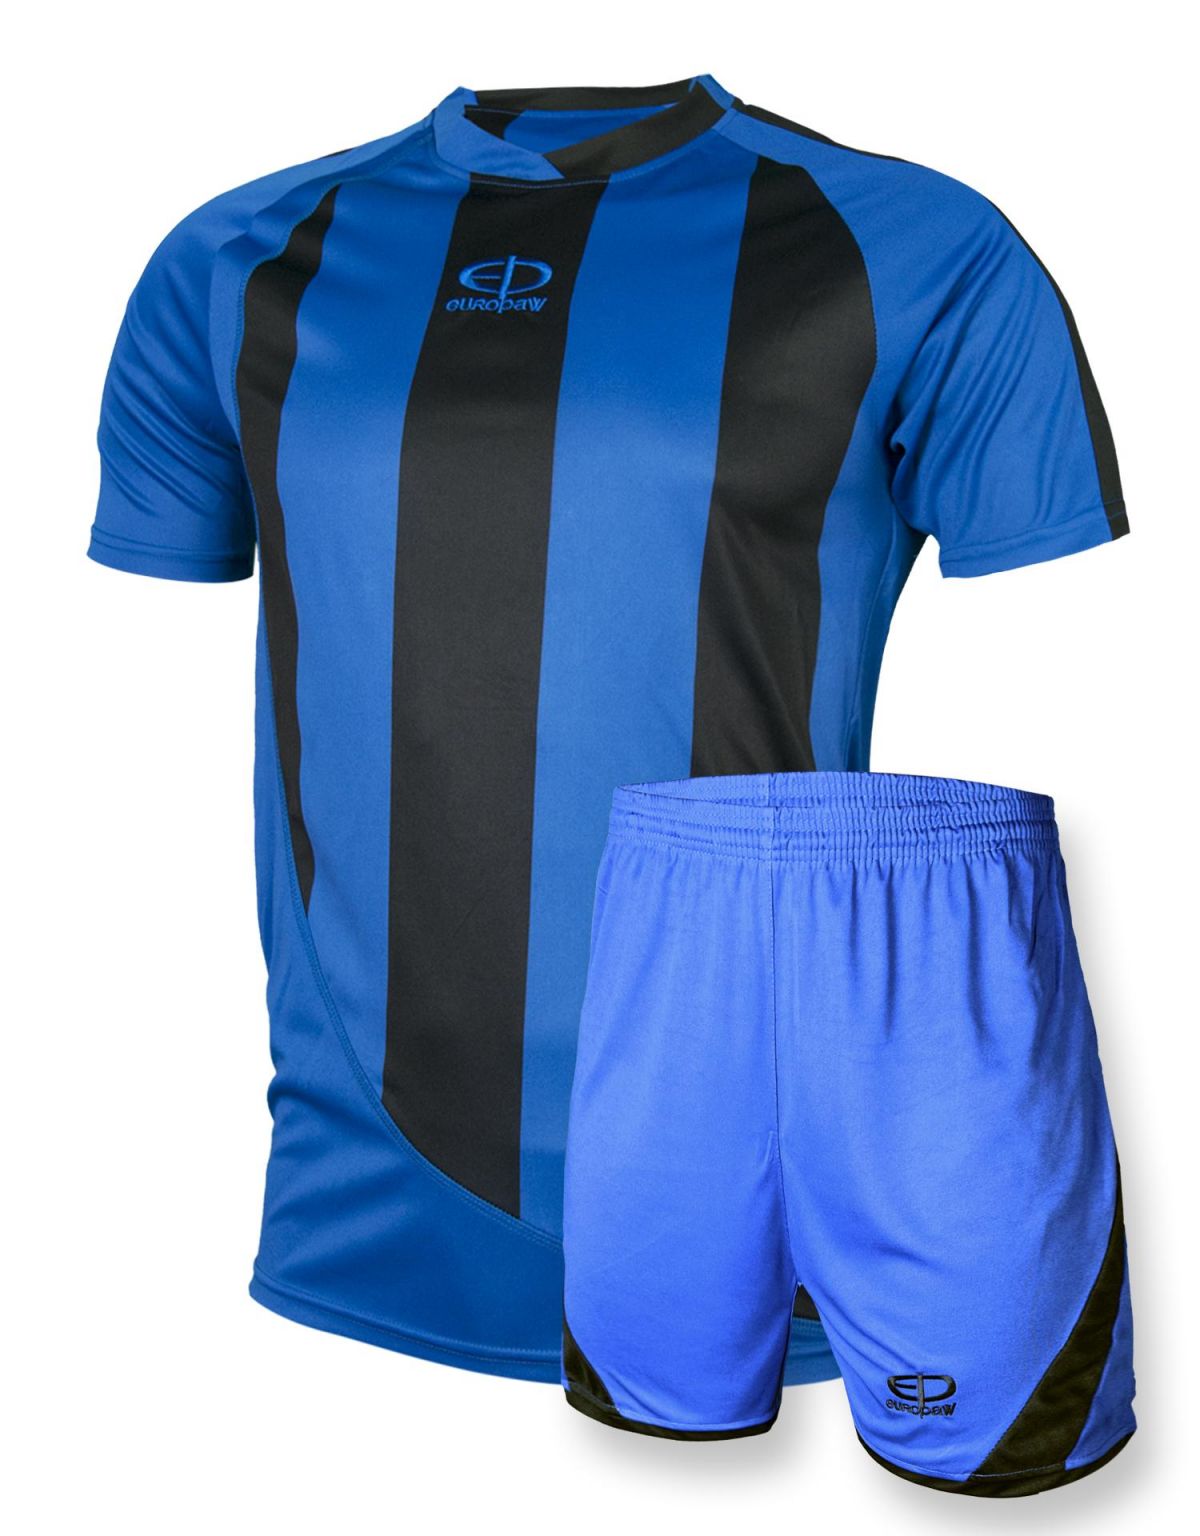 Футбольная форма Europaw 001 сине-черная-1